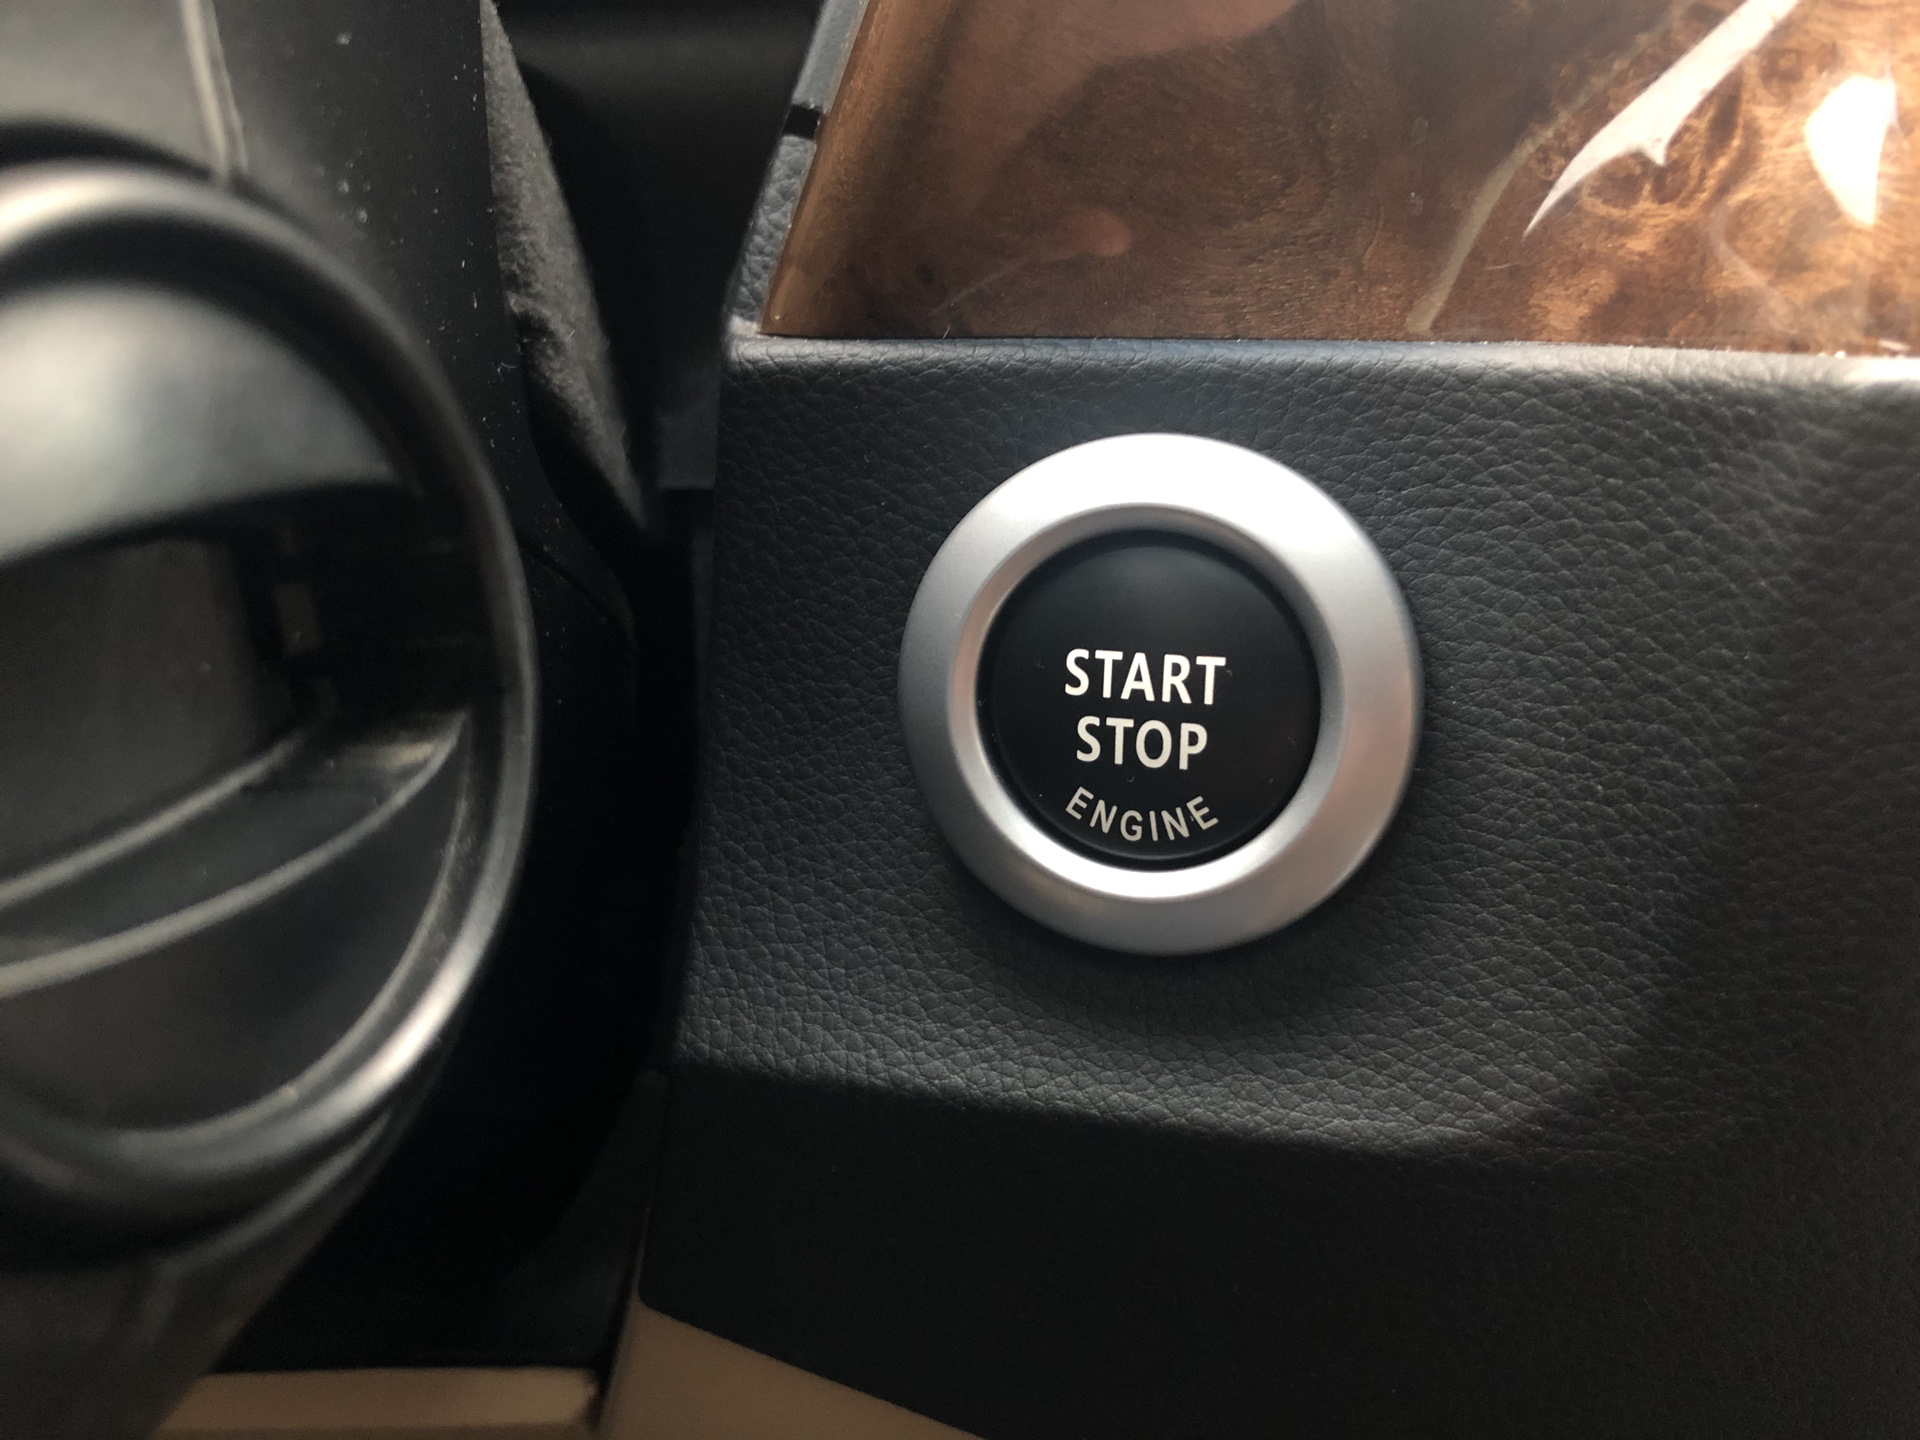 Старт стоп дизель. Кнопка старт стоп Форд Мондео 3. Рено Логан 2018 start stop engine. Система старт стоп на Suzuki sx4. Накладка на старт-стоп.